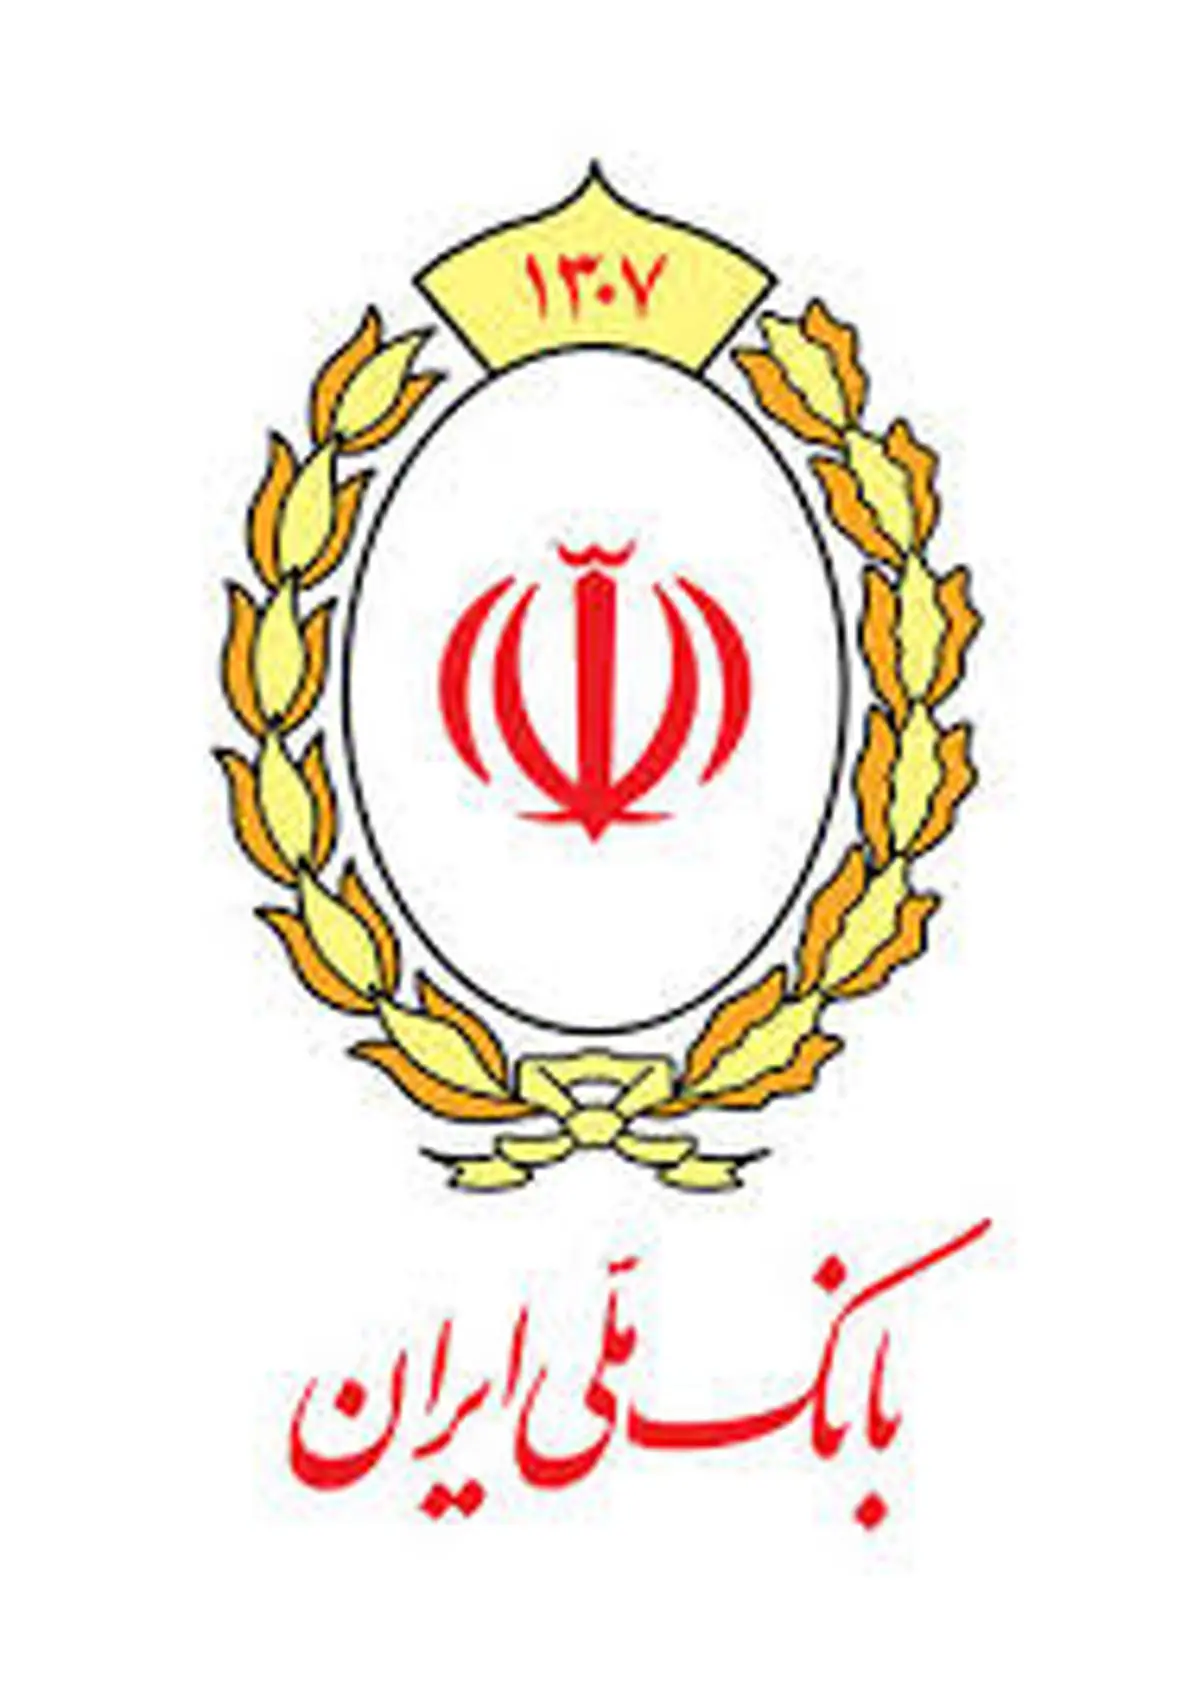 راه اندازی سامانه ثبت نام غیرحضوری کارگزاری بانک ملی ایران

